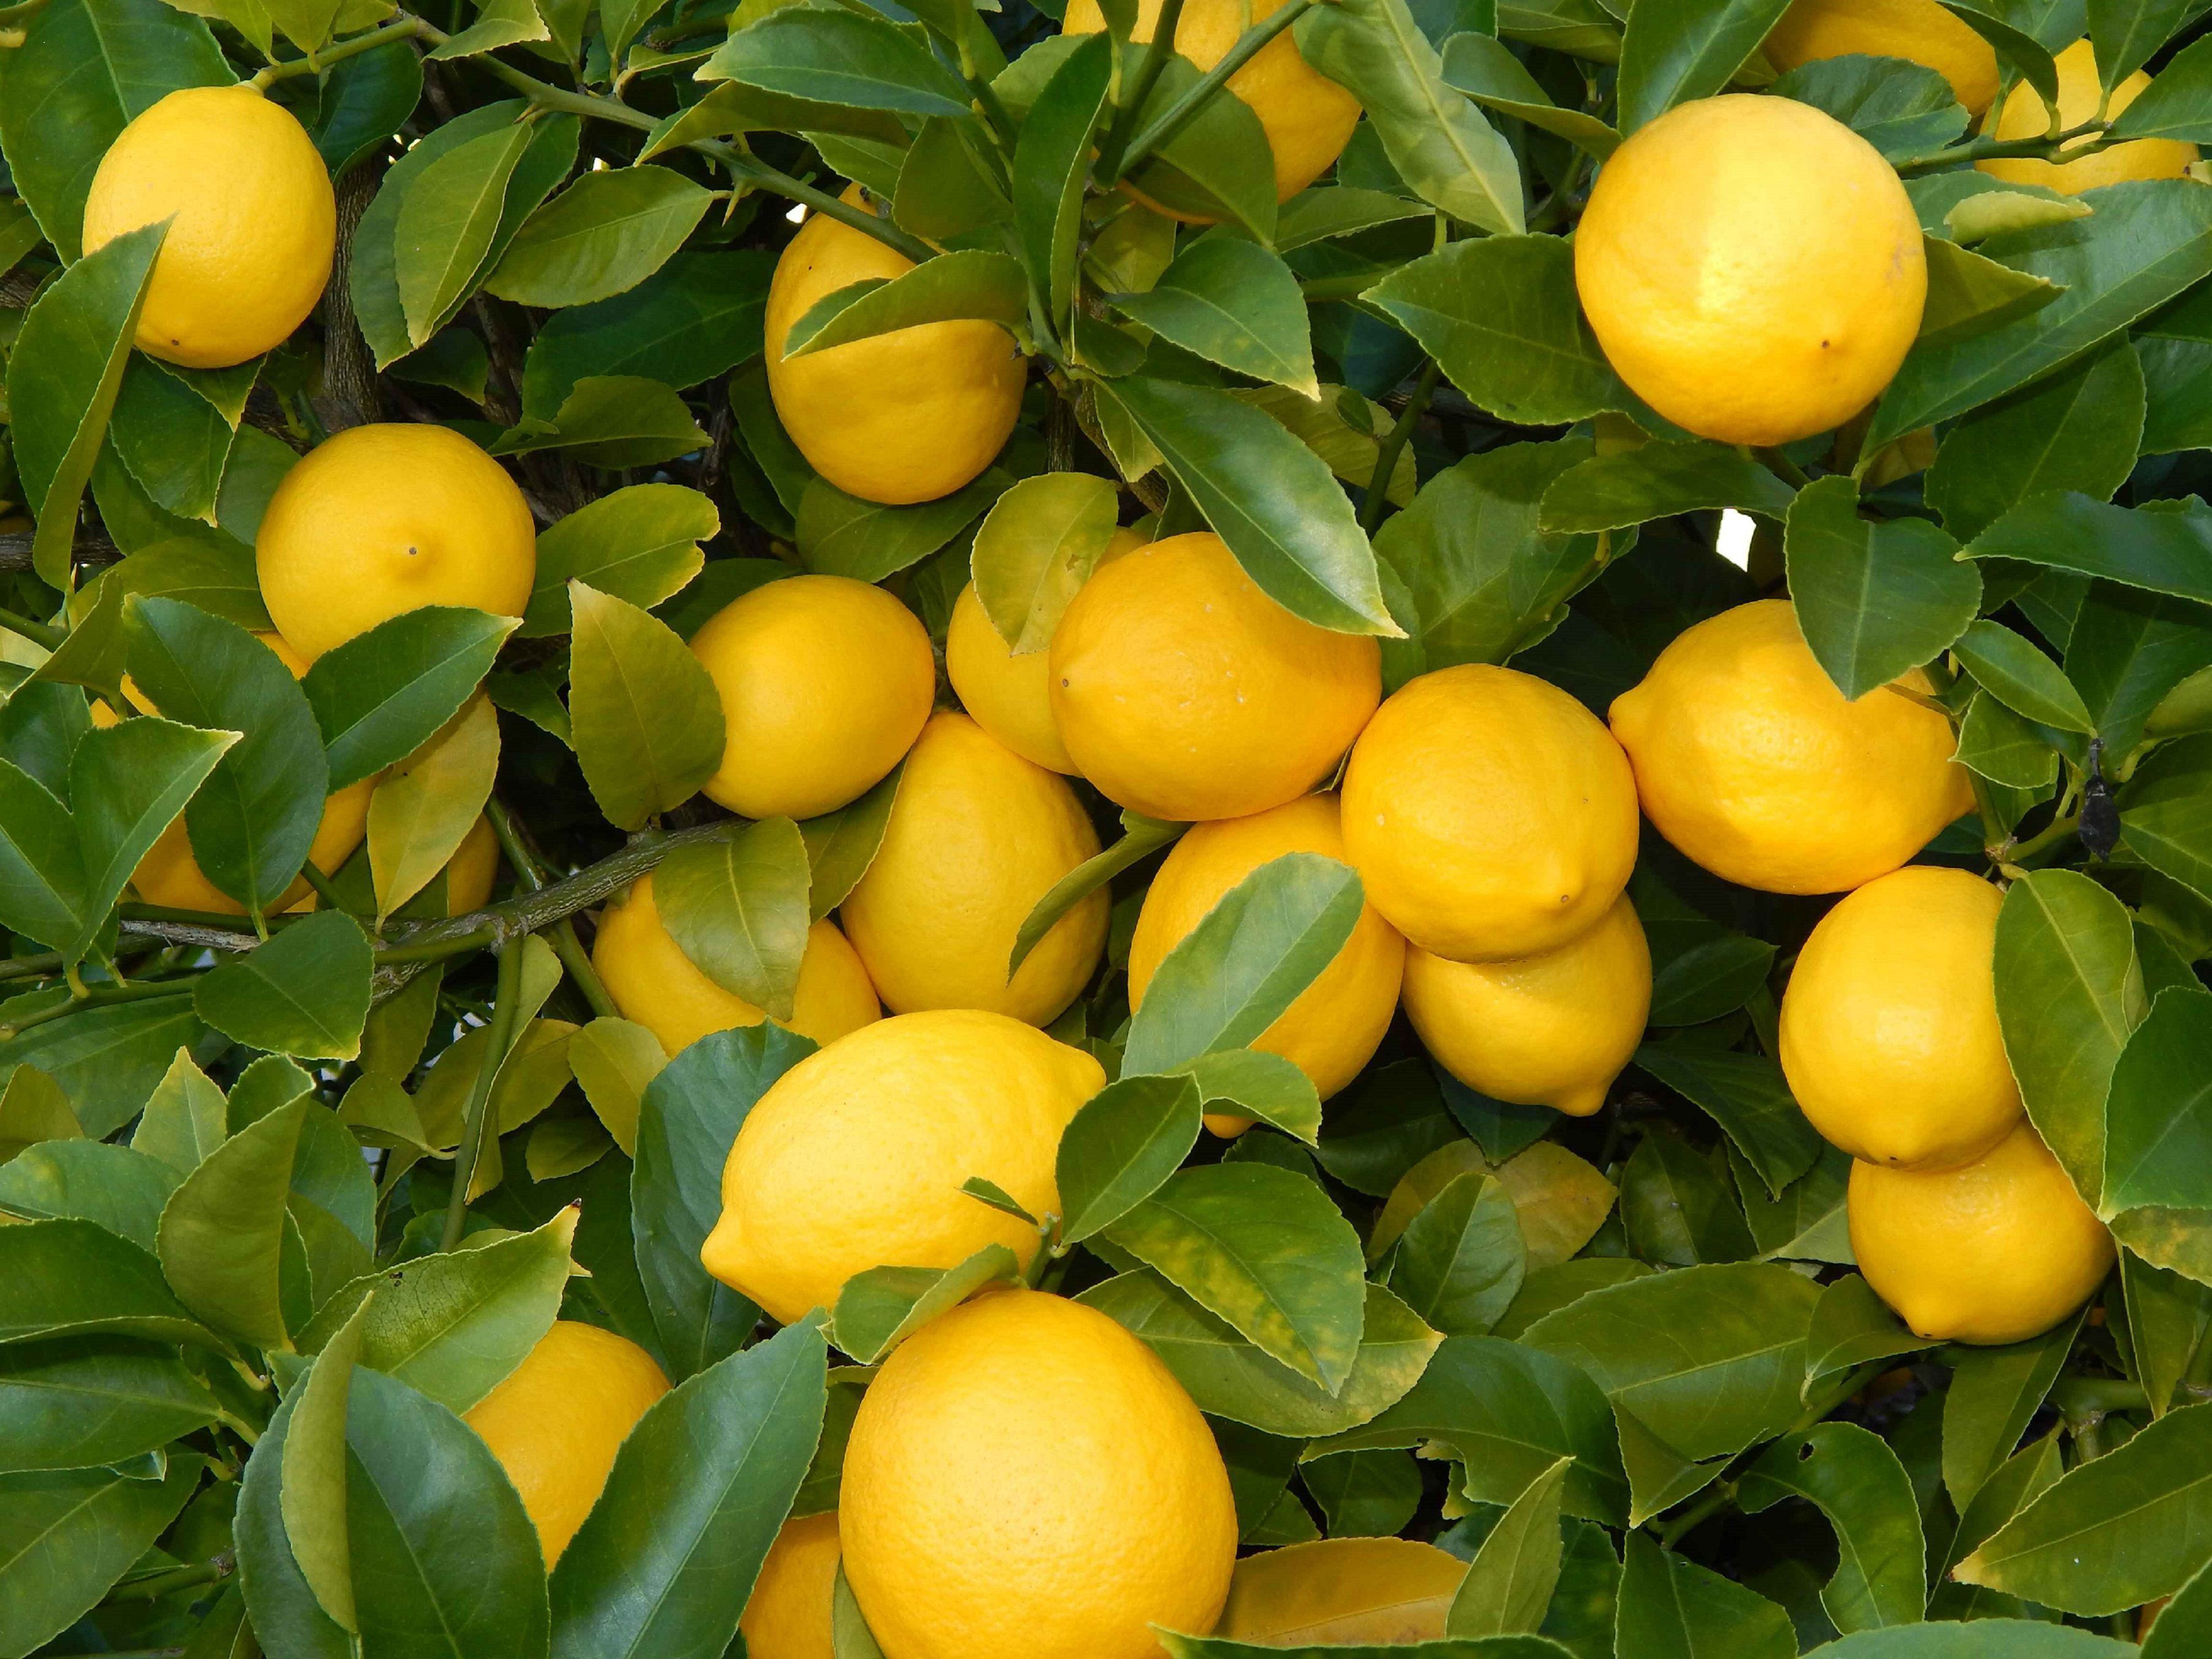 Charleigh lemons